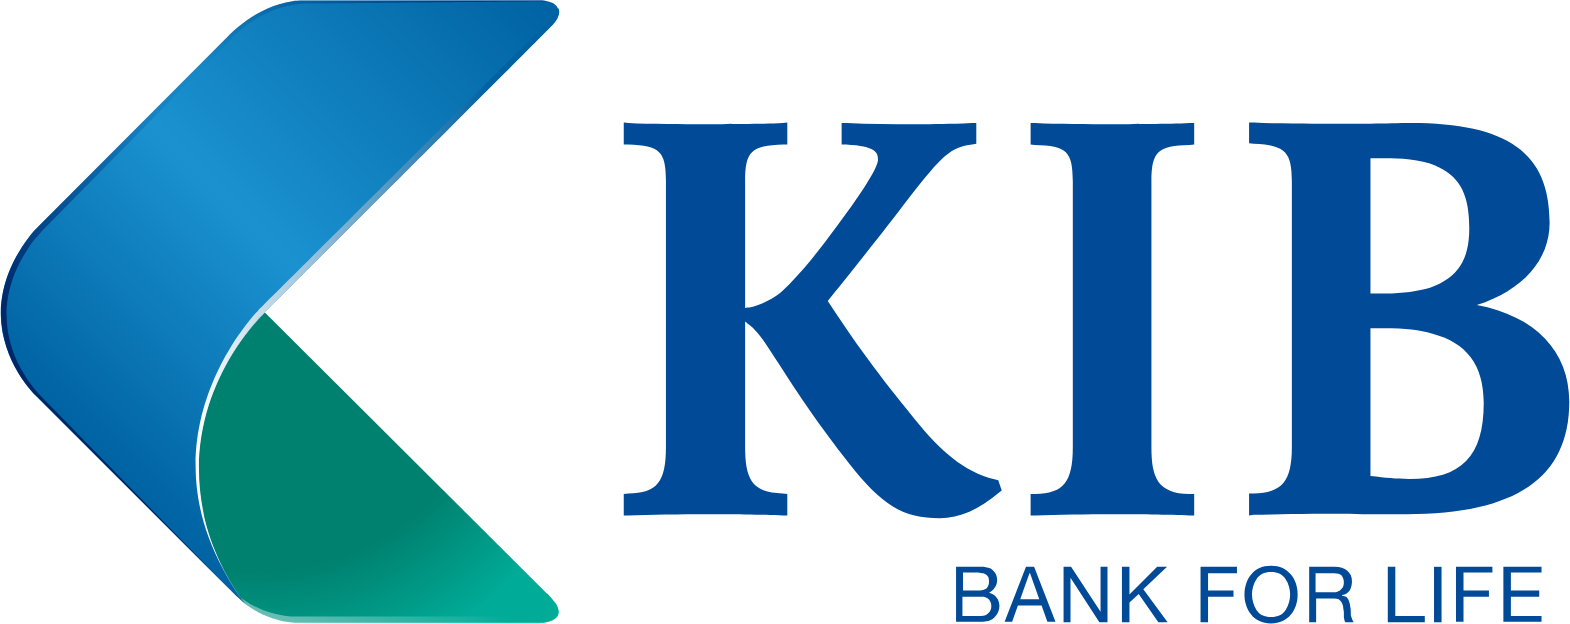 Kuwait International Bank logo large (transparent PNG)